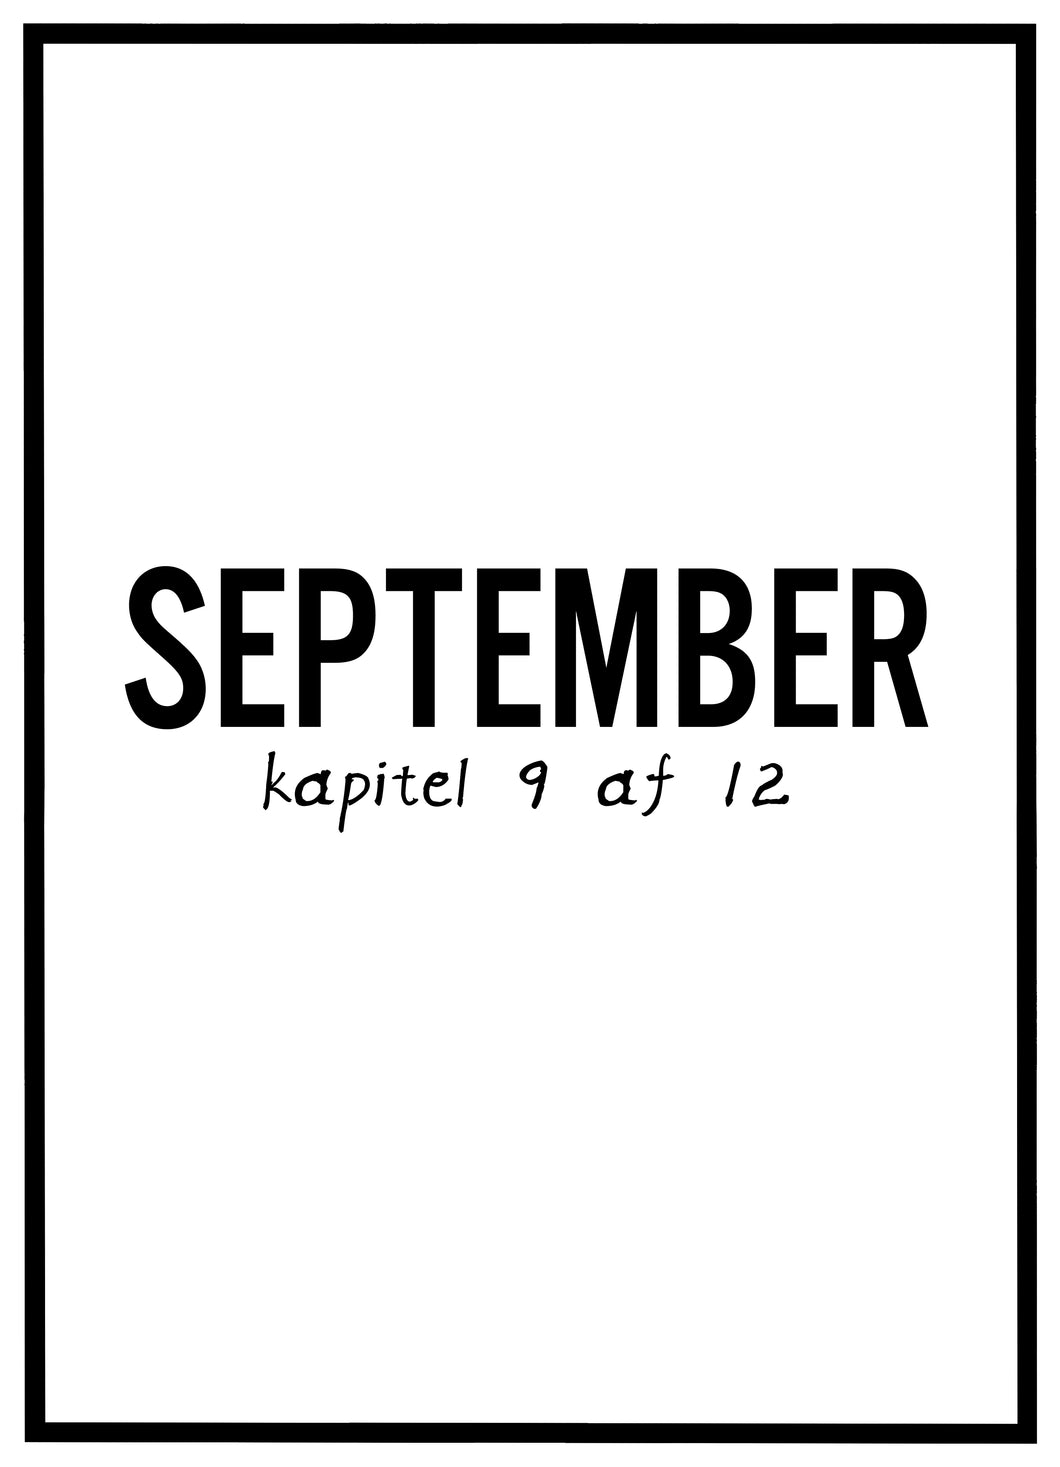 September - Plakat